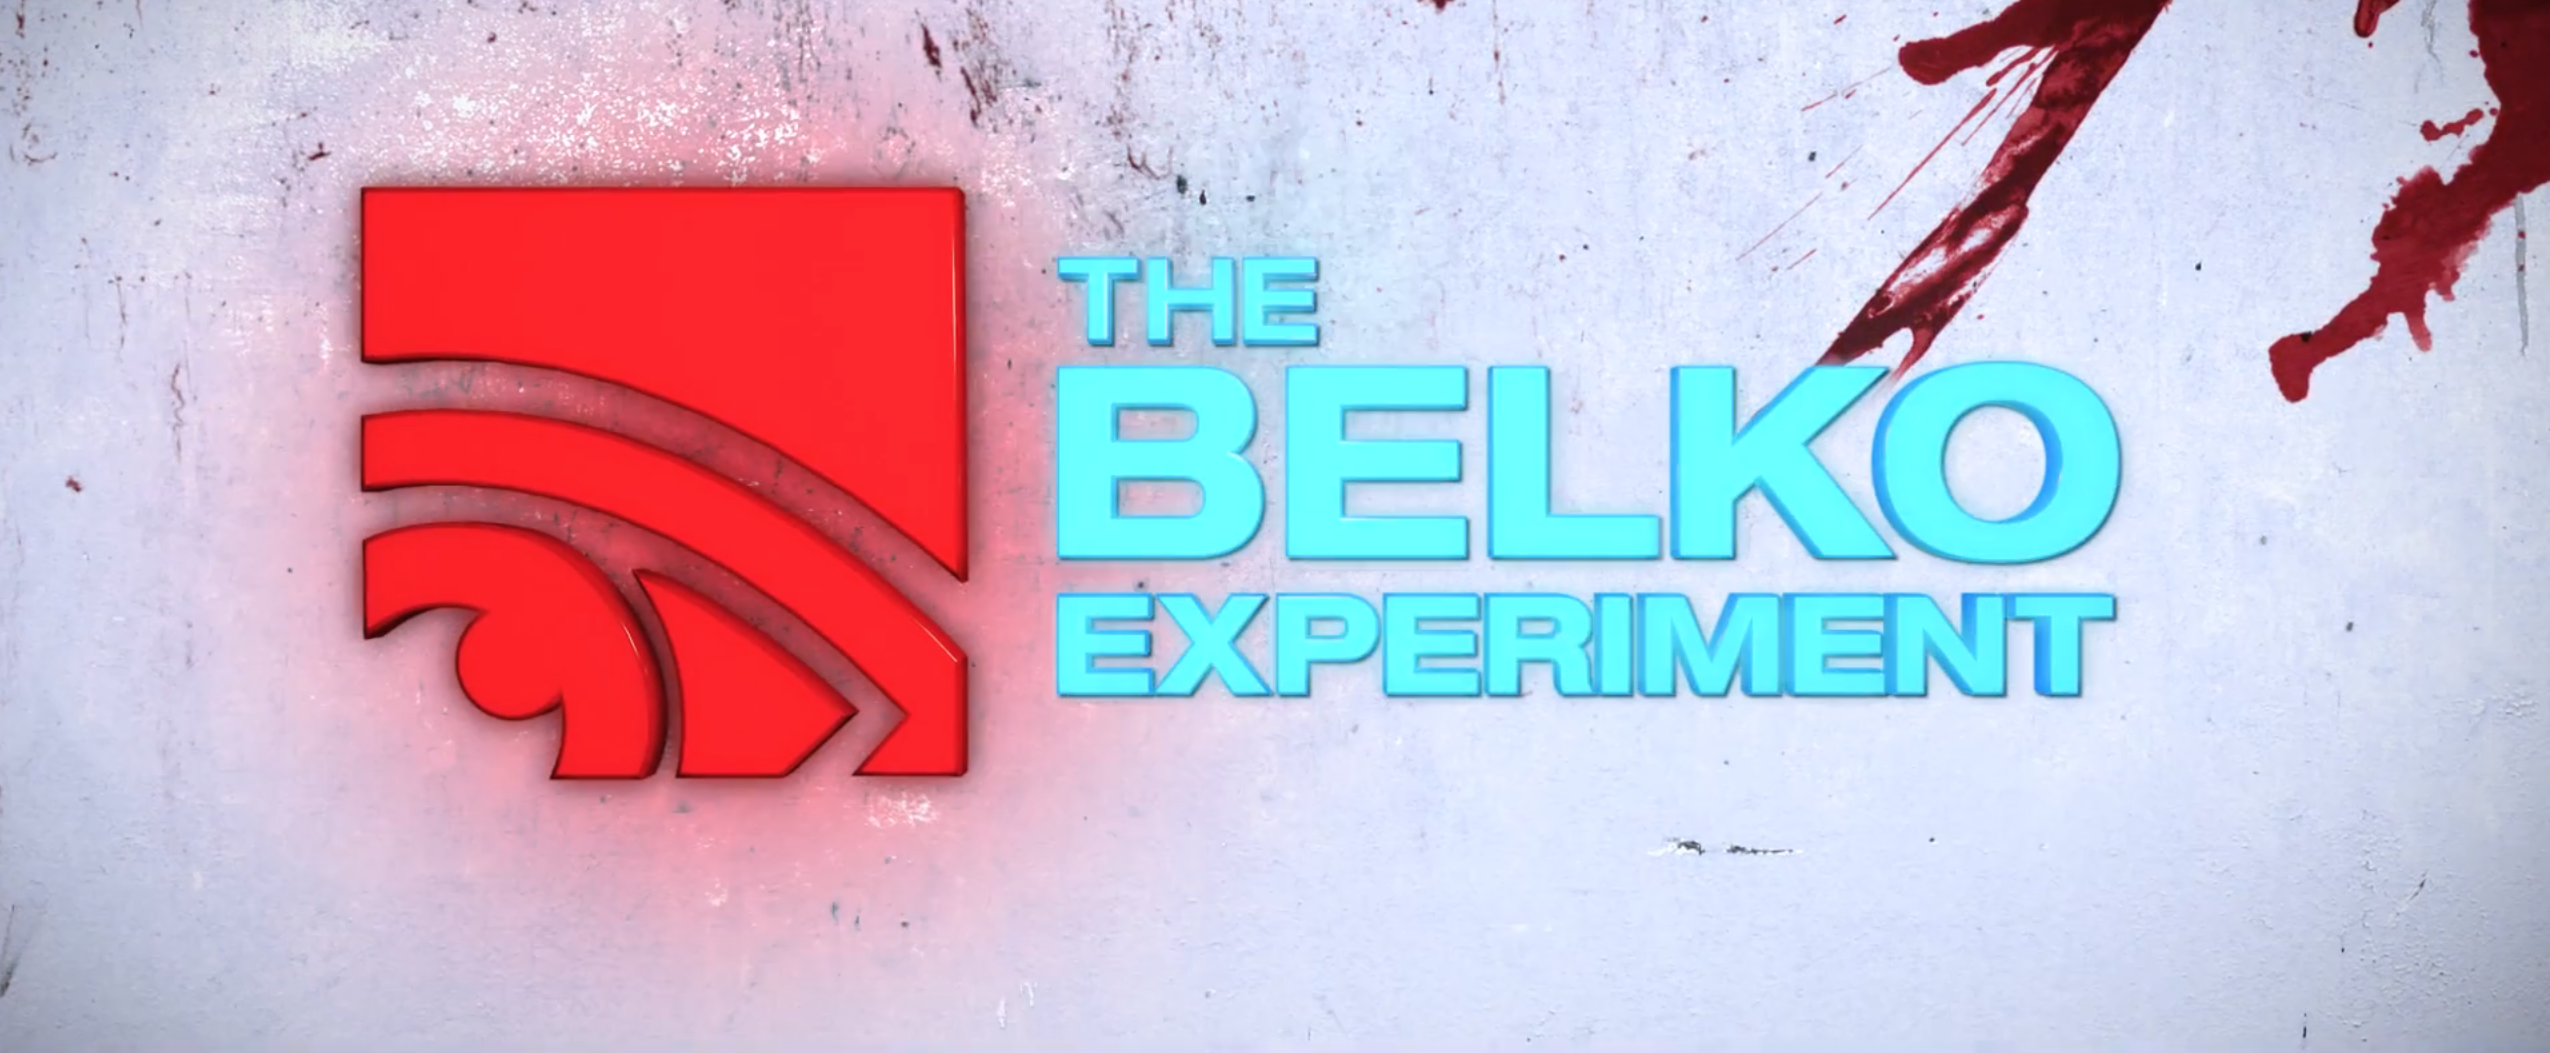 The Belko Experiment (2017)